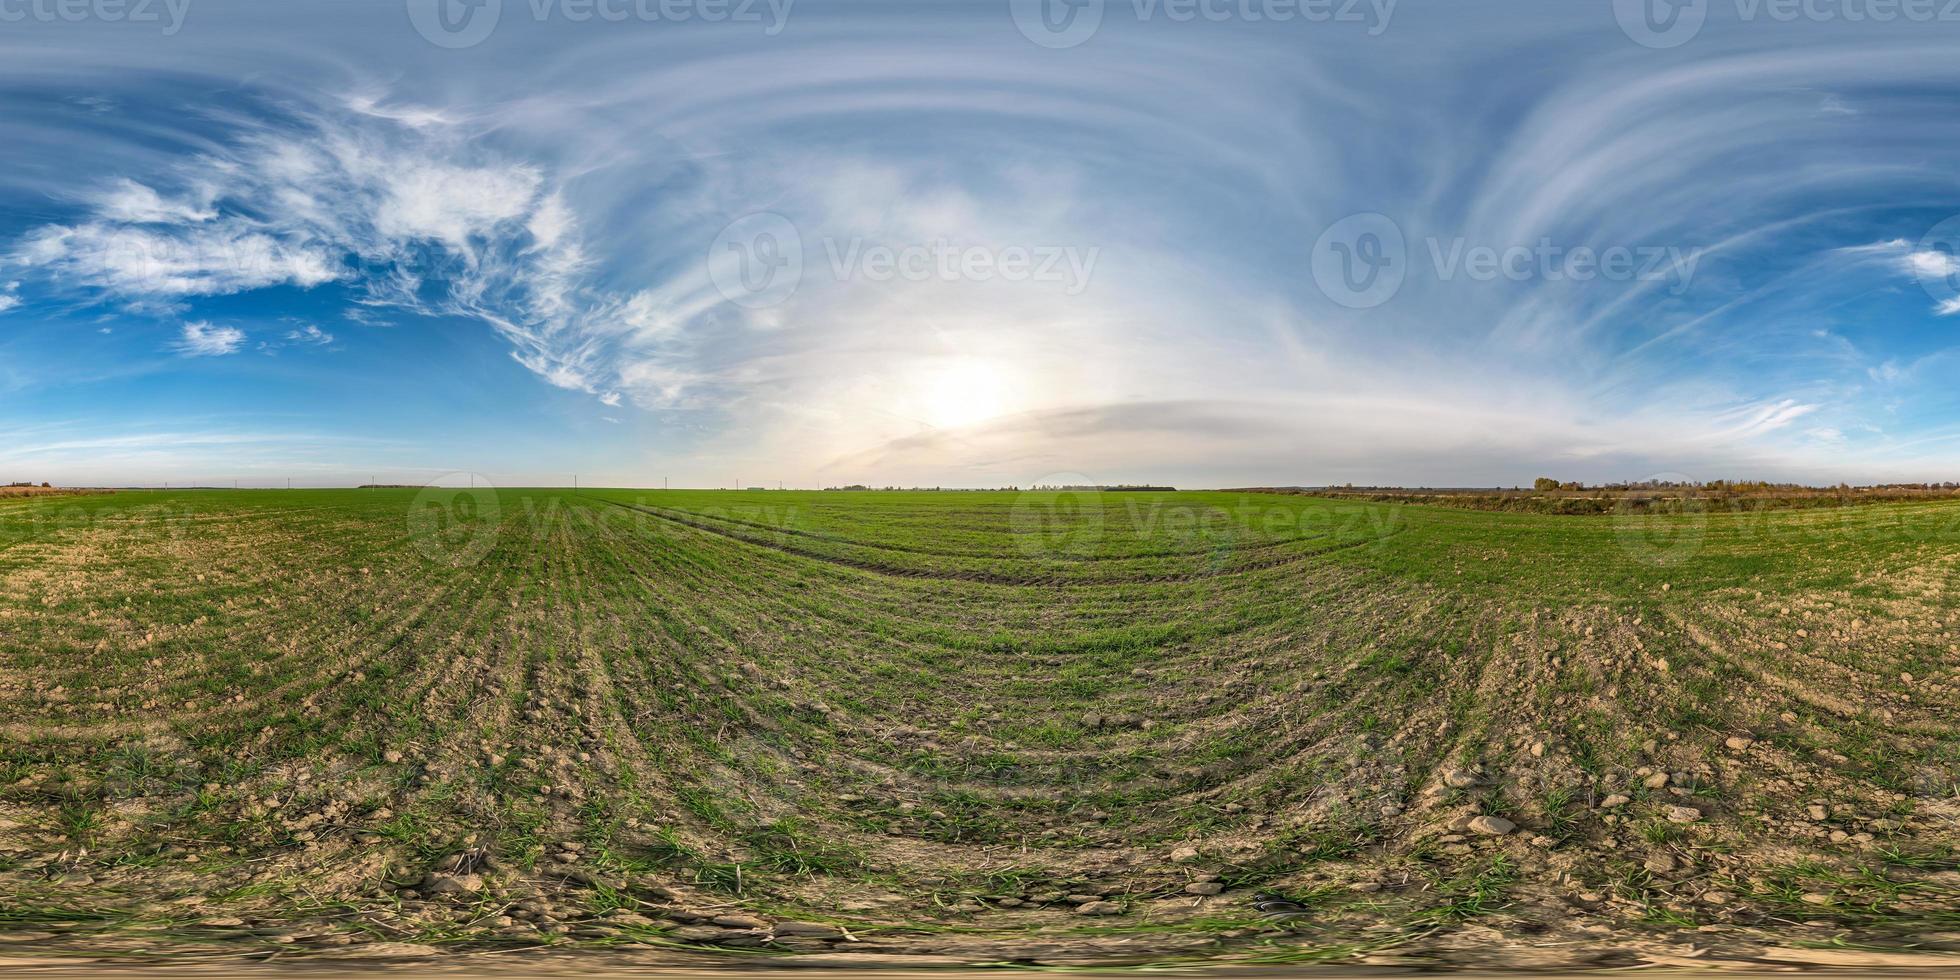 full sömlös sfärisk hdri panorama 360 graders vinkelvy bland fält i solig höstdag med fantastiska moln i ekvirektangulär projektion med zenit och nadir, redo för vr ar virtuell verklighet foto